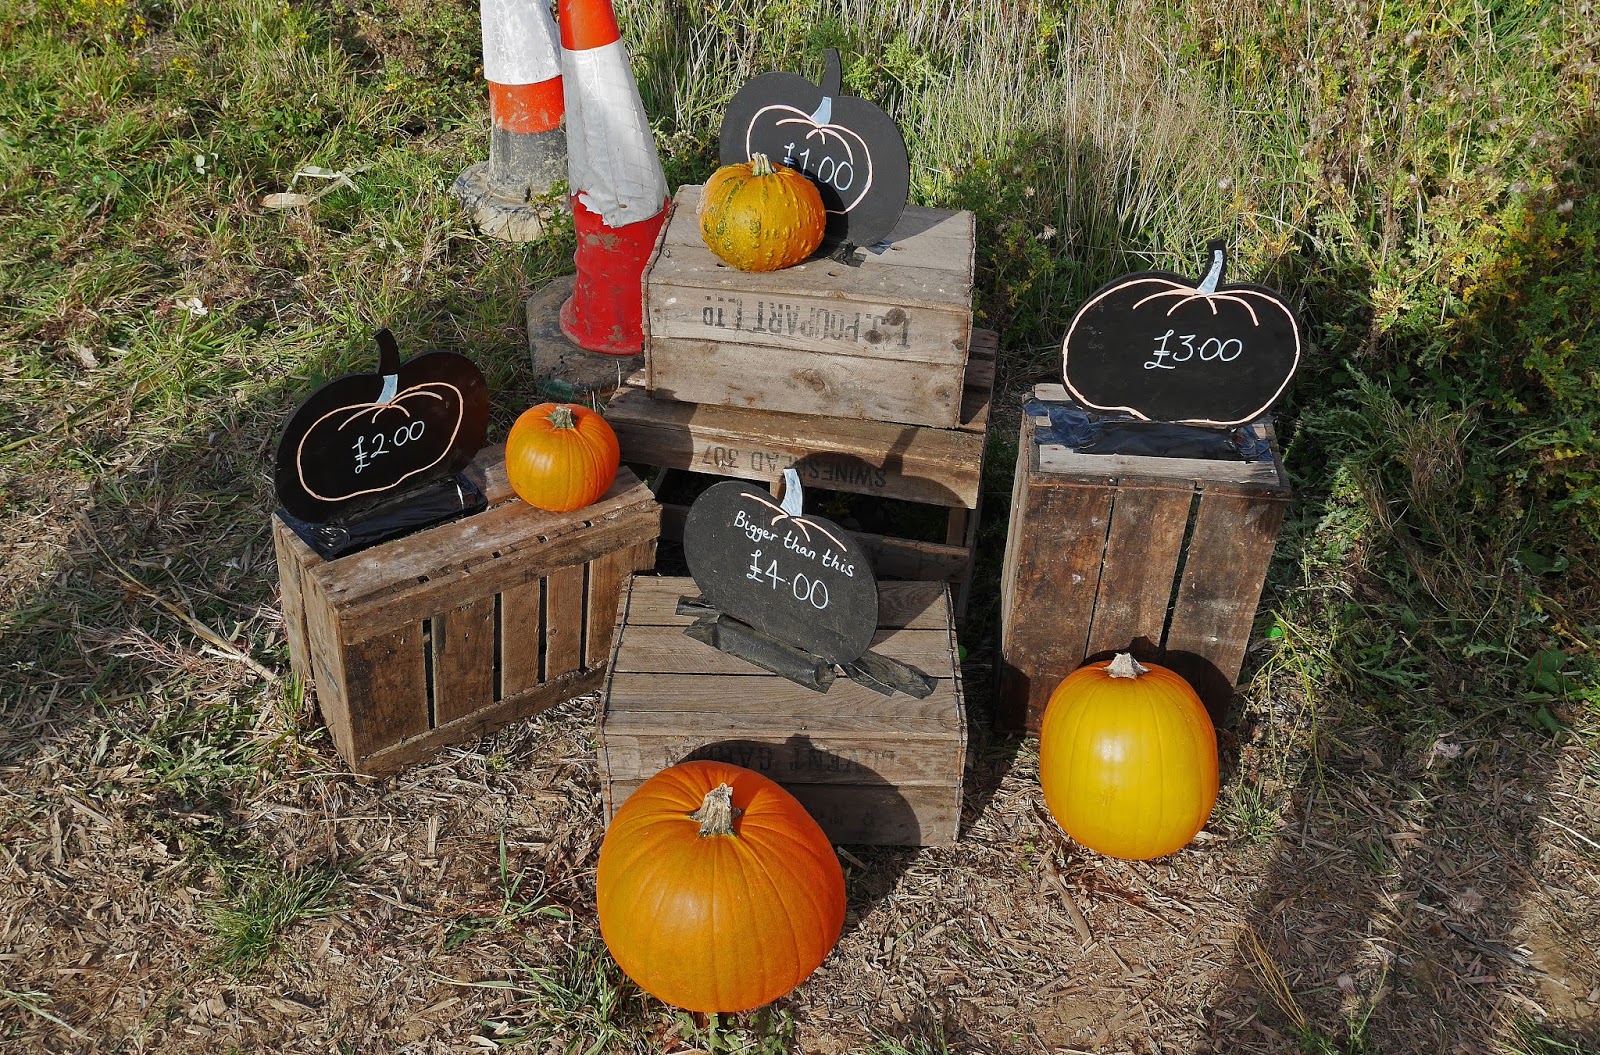 Pumpkin prices at the Sevington pumpkin patch, Ashford